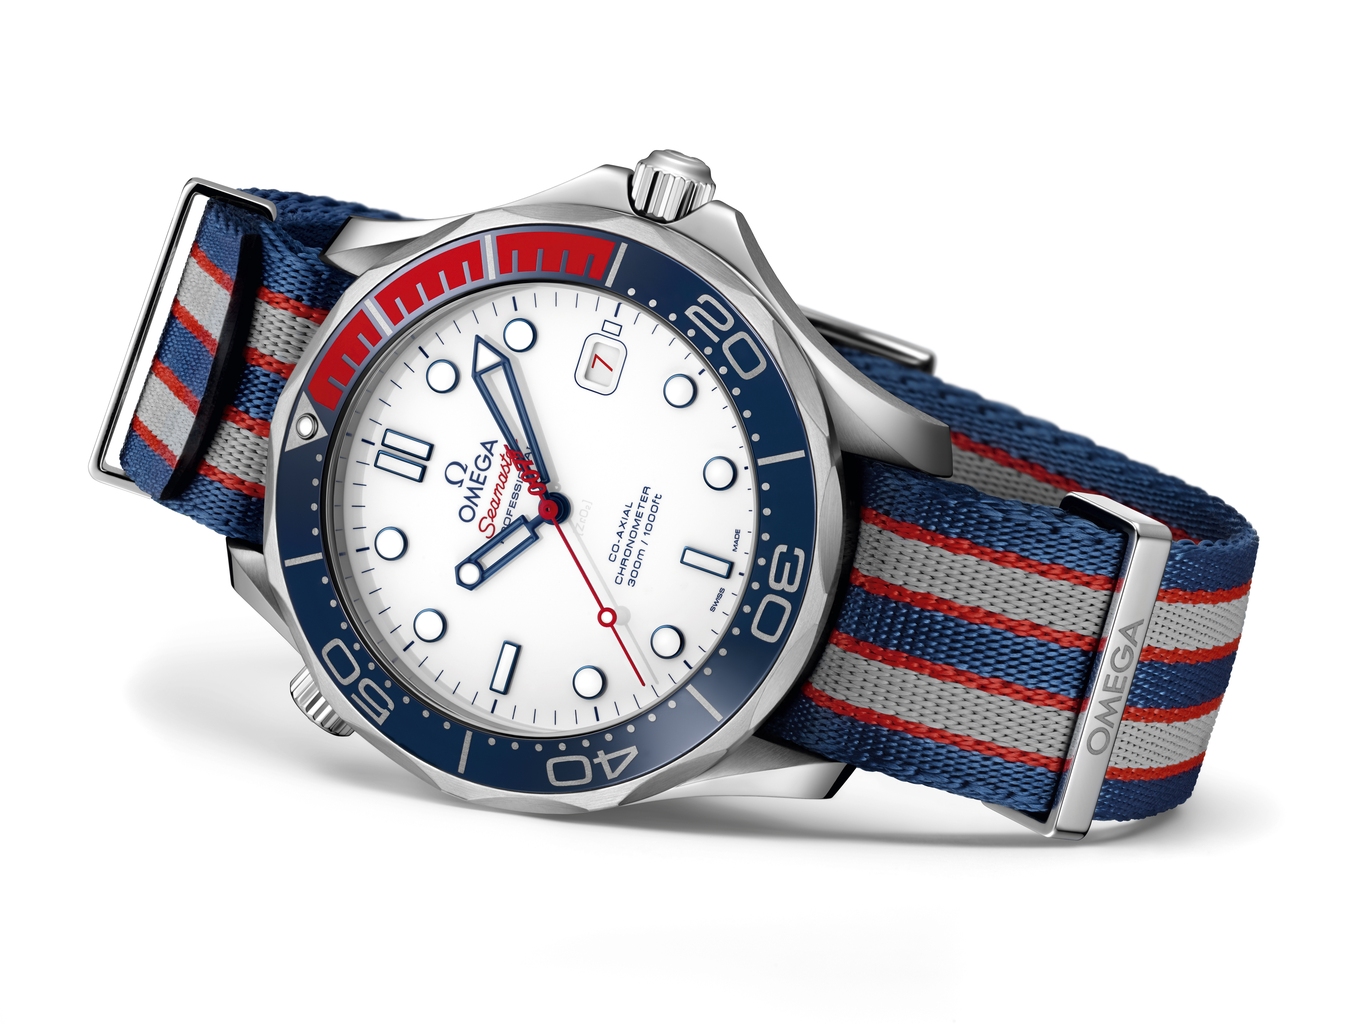 OMEGA Seamaster Diver 300M Commander's Watch 212.32.41.20.04.001 в честь сэра Джеймса Бонда